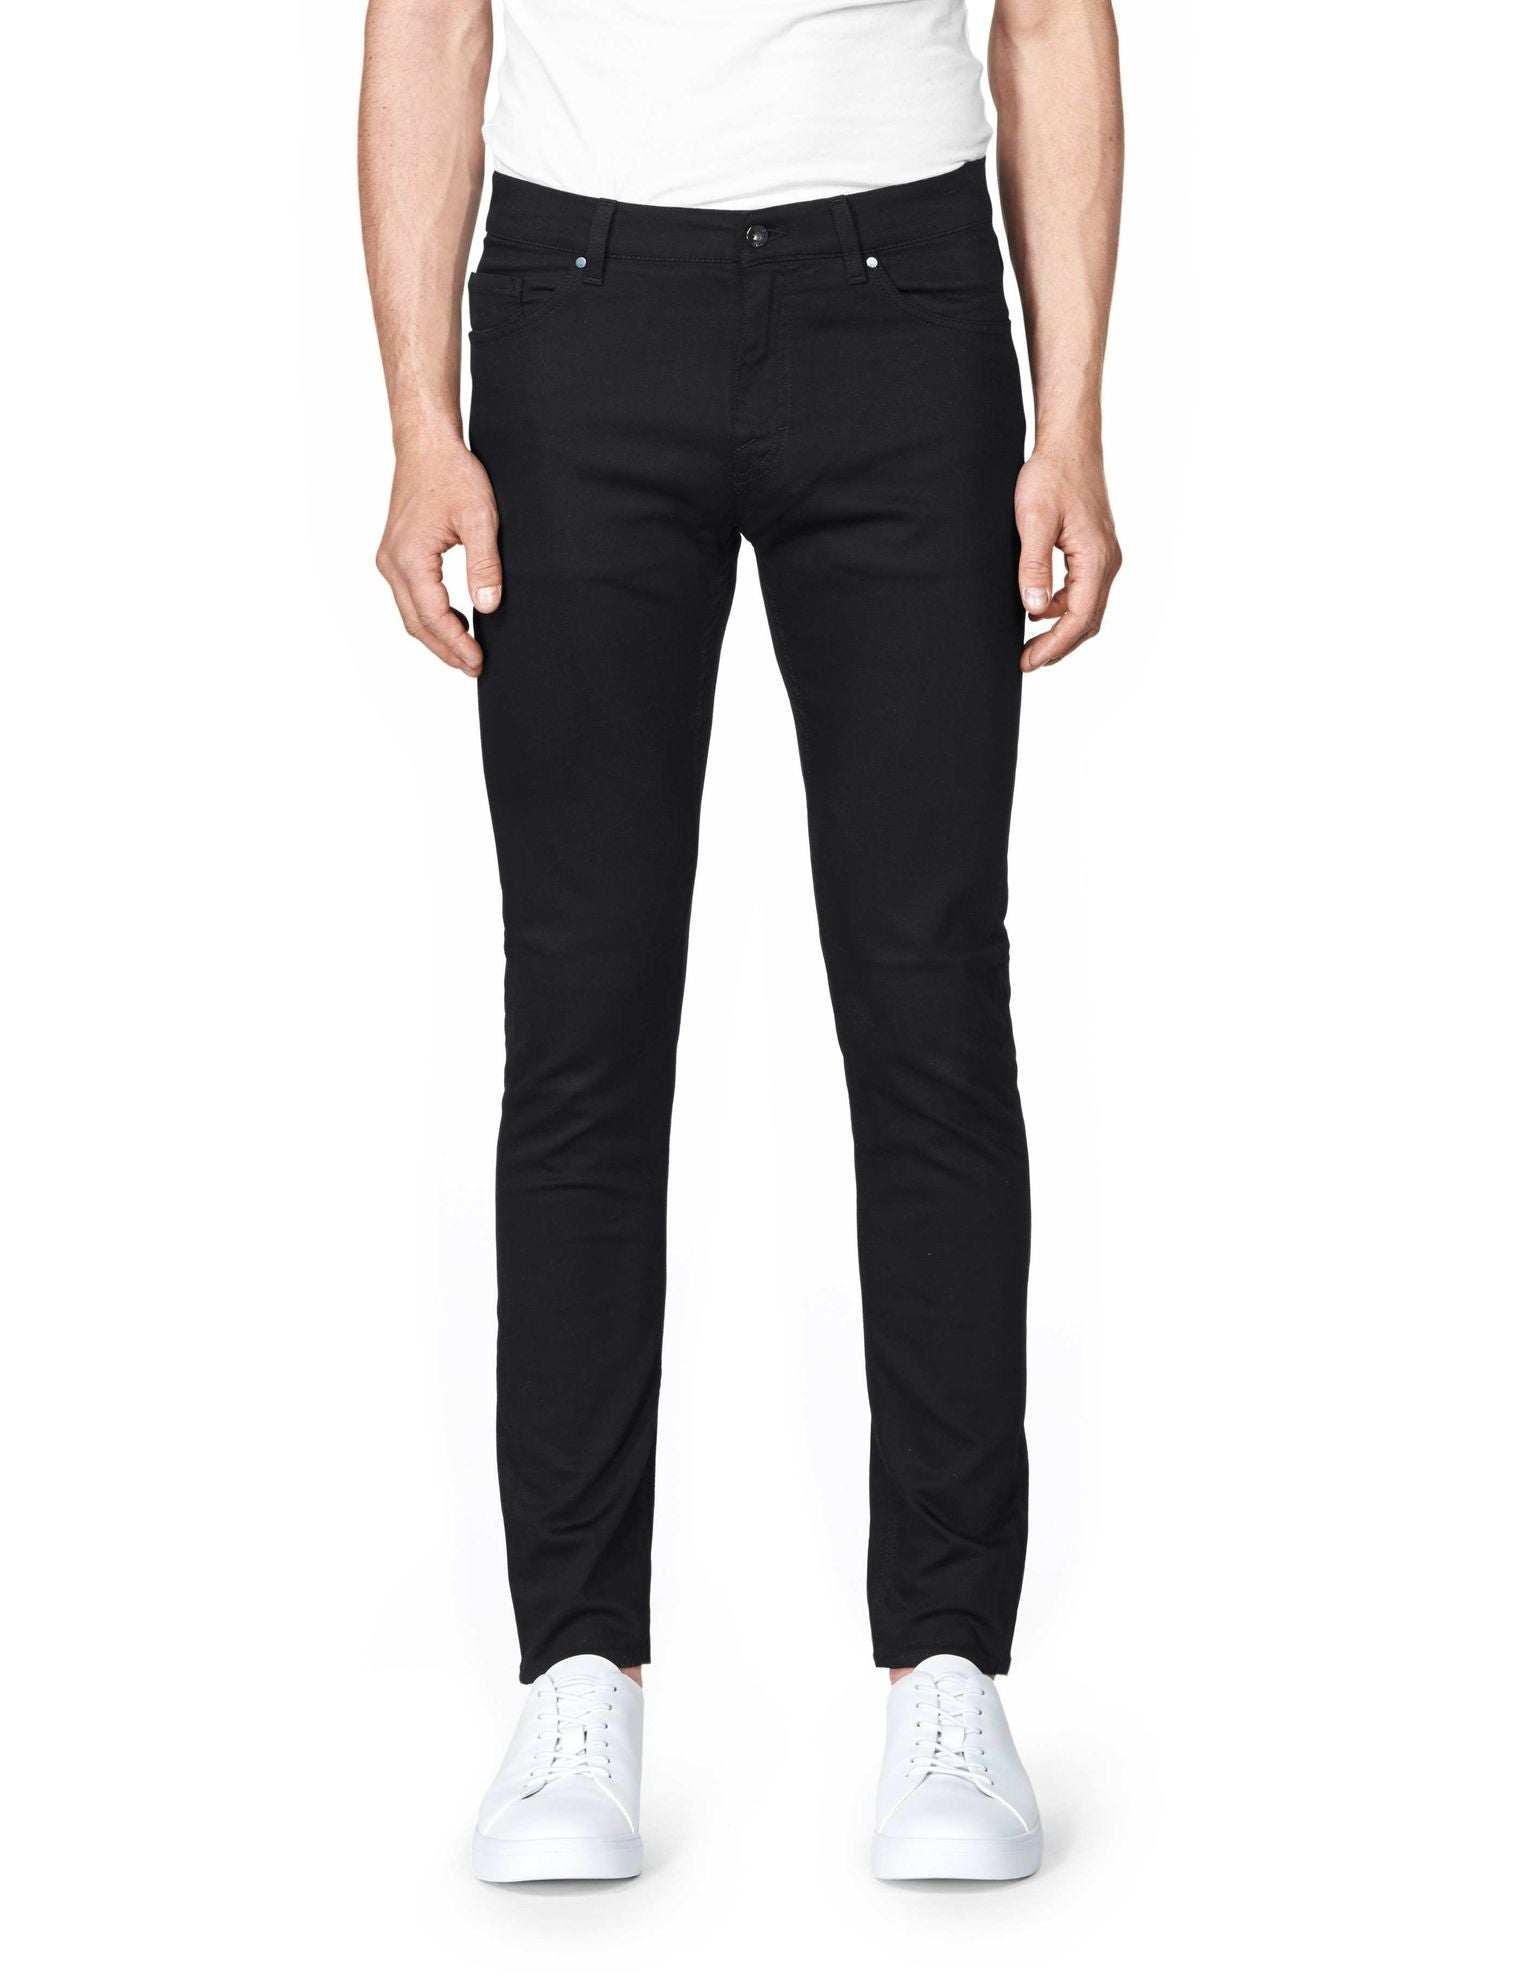 Tiger Of Sweden Evolve jeans Forever black - Mojo Independent Store